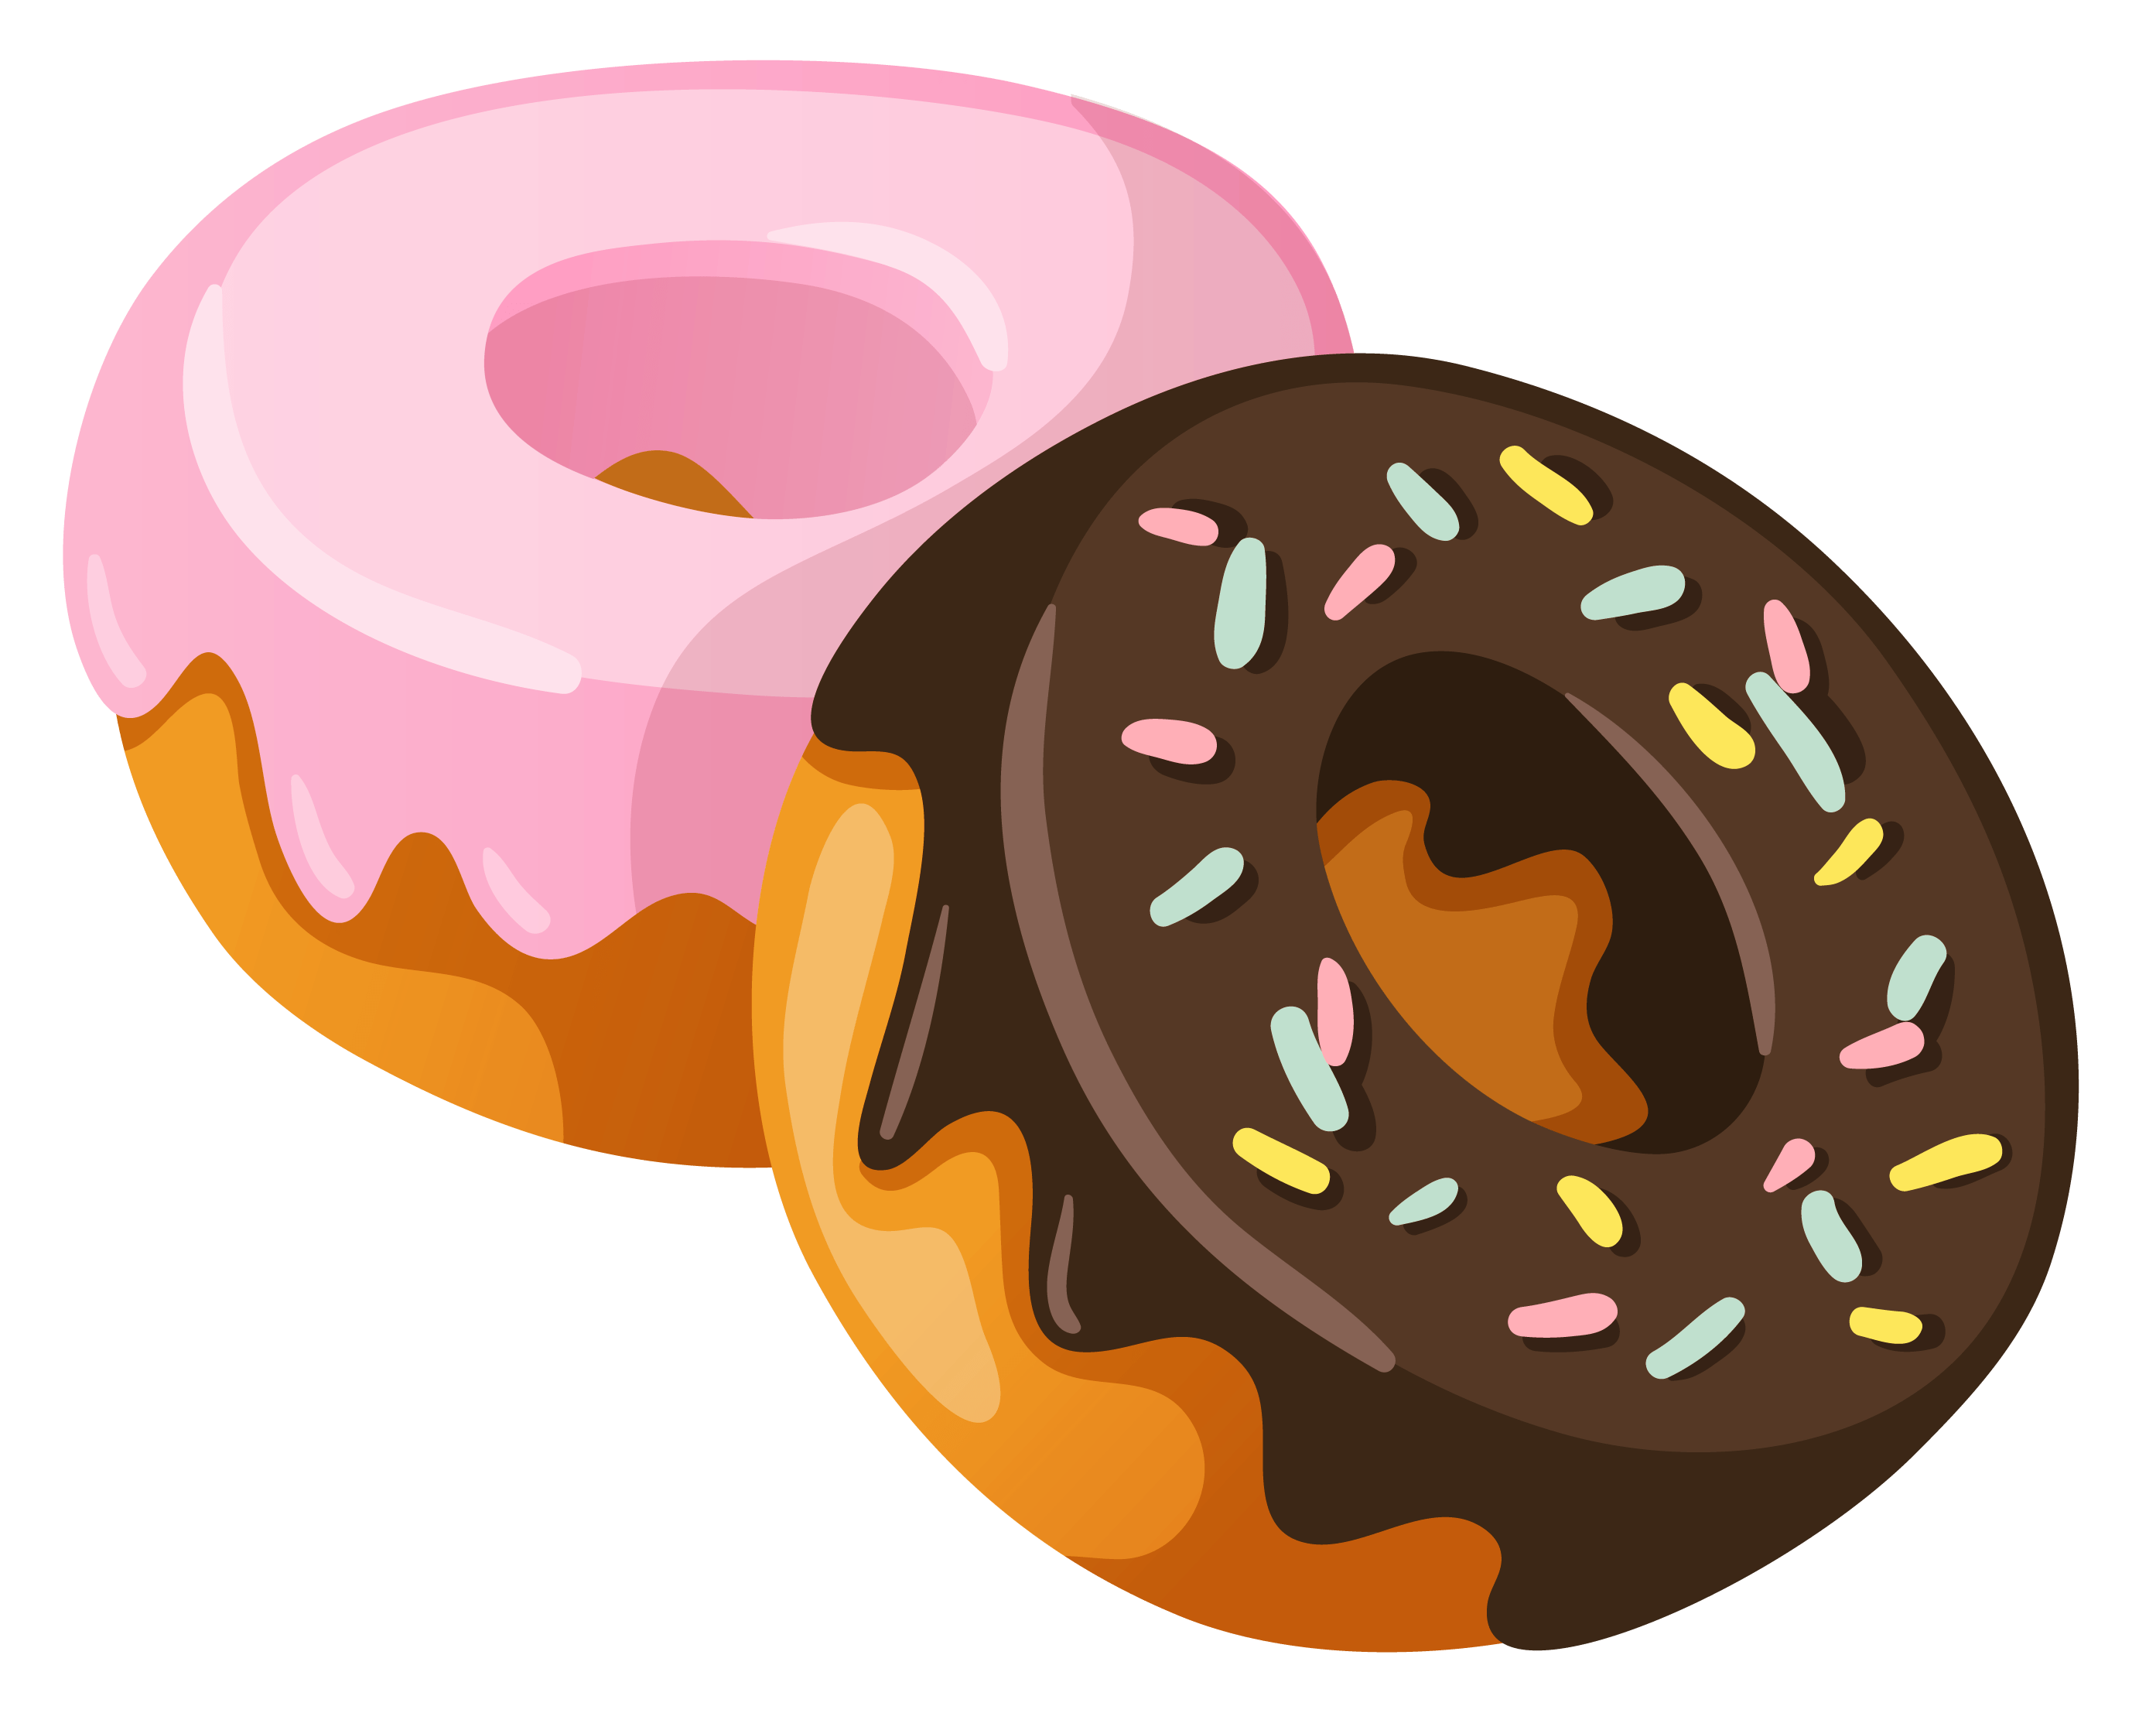 Drawn doughnut png tumblr tra